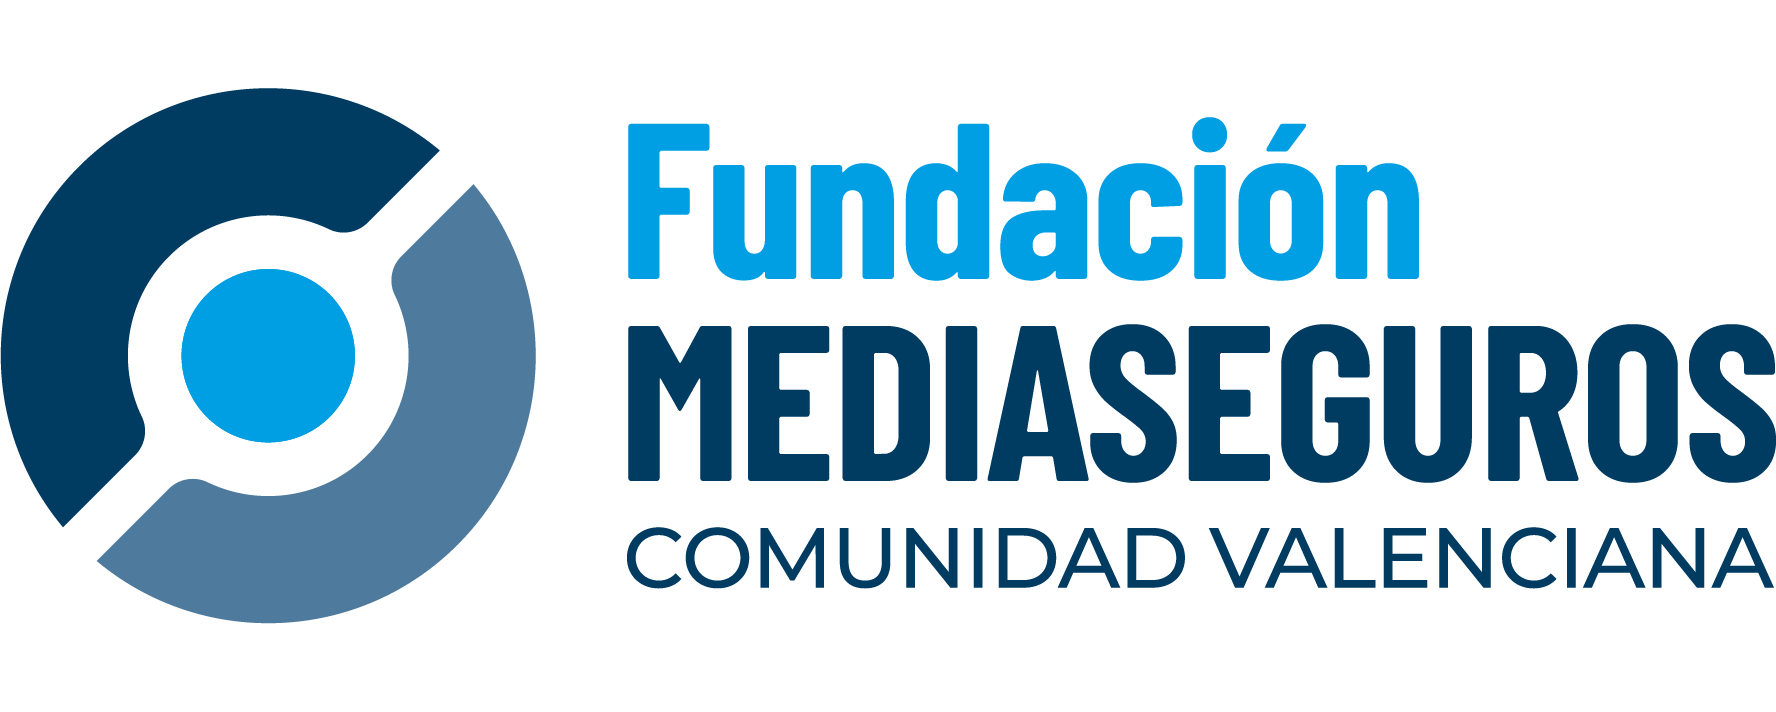 Fundación Mediaseguros Comunidad Valenciana